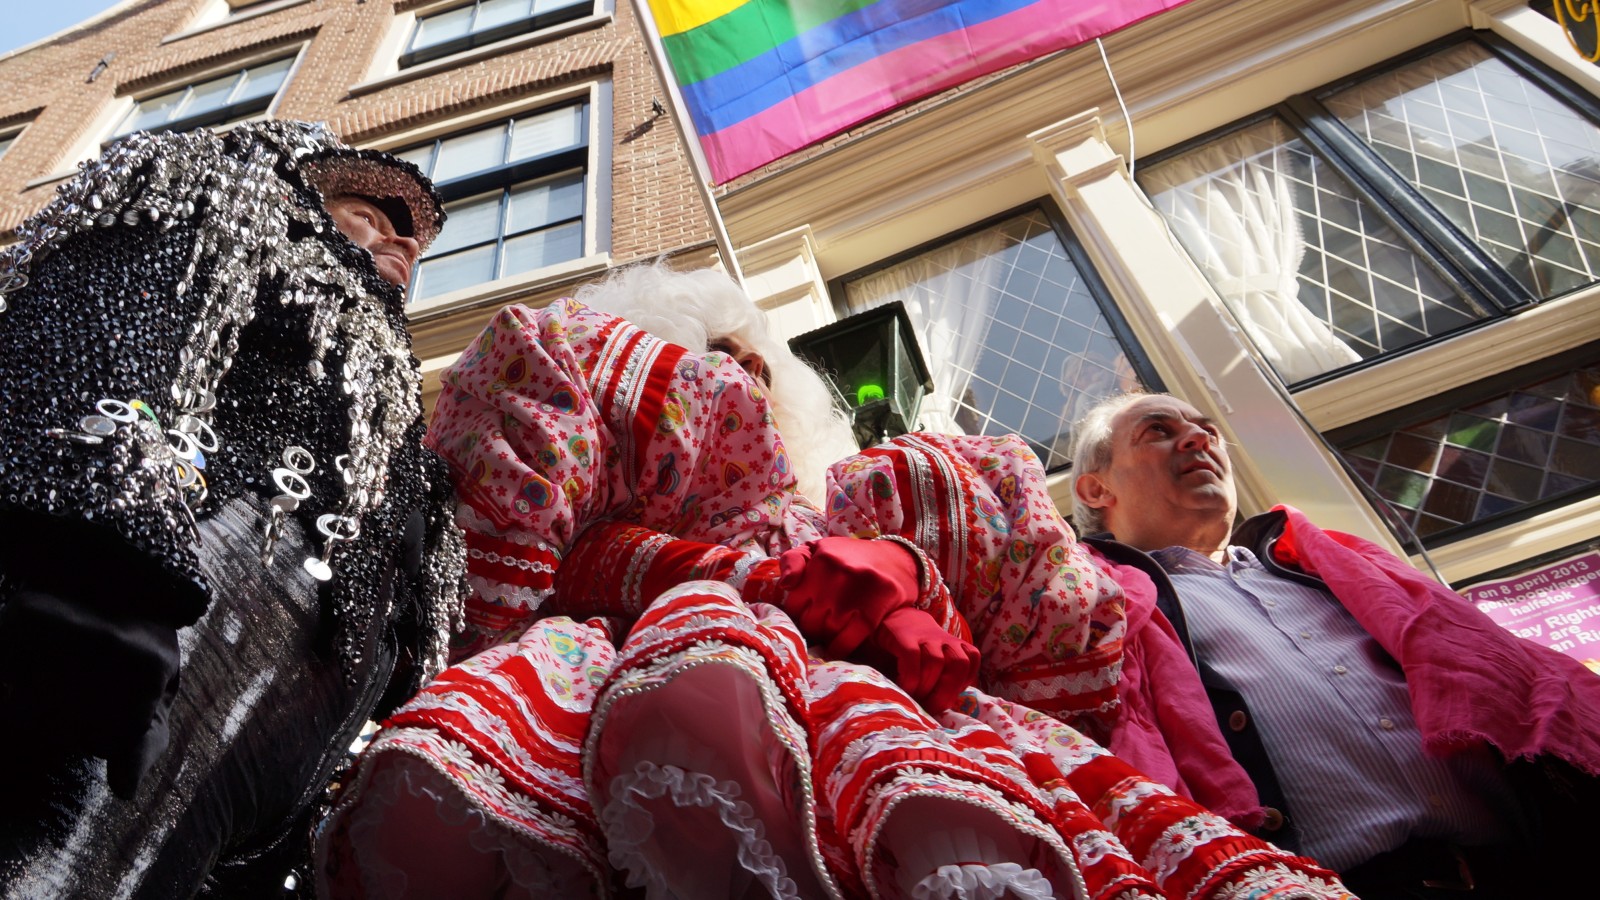  De Russische president Vladimir Poetin zal morgen vele regenboogvlaggen halfstok zien hangen. Op deze manier protesteren het COC en het actiecomité Gay message 4 Russia tegen de Russische anti-homowetgeving.

Oud-burgemeester Job Cohen hees zondagmidda